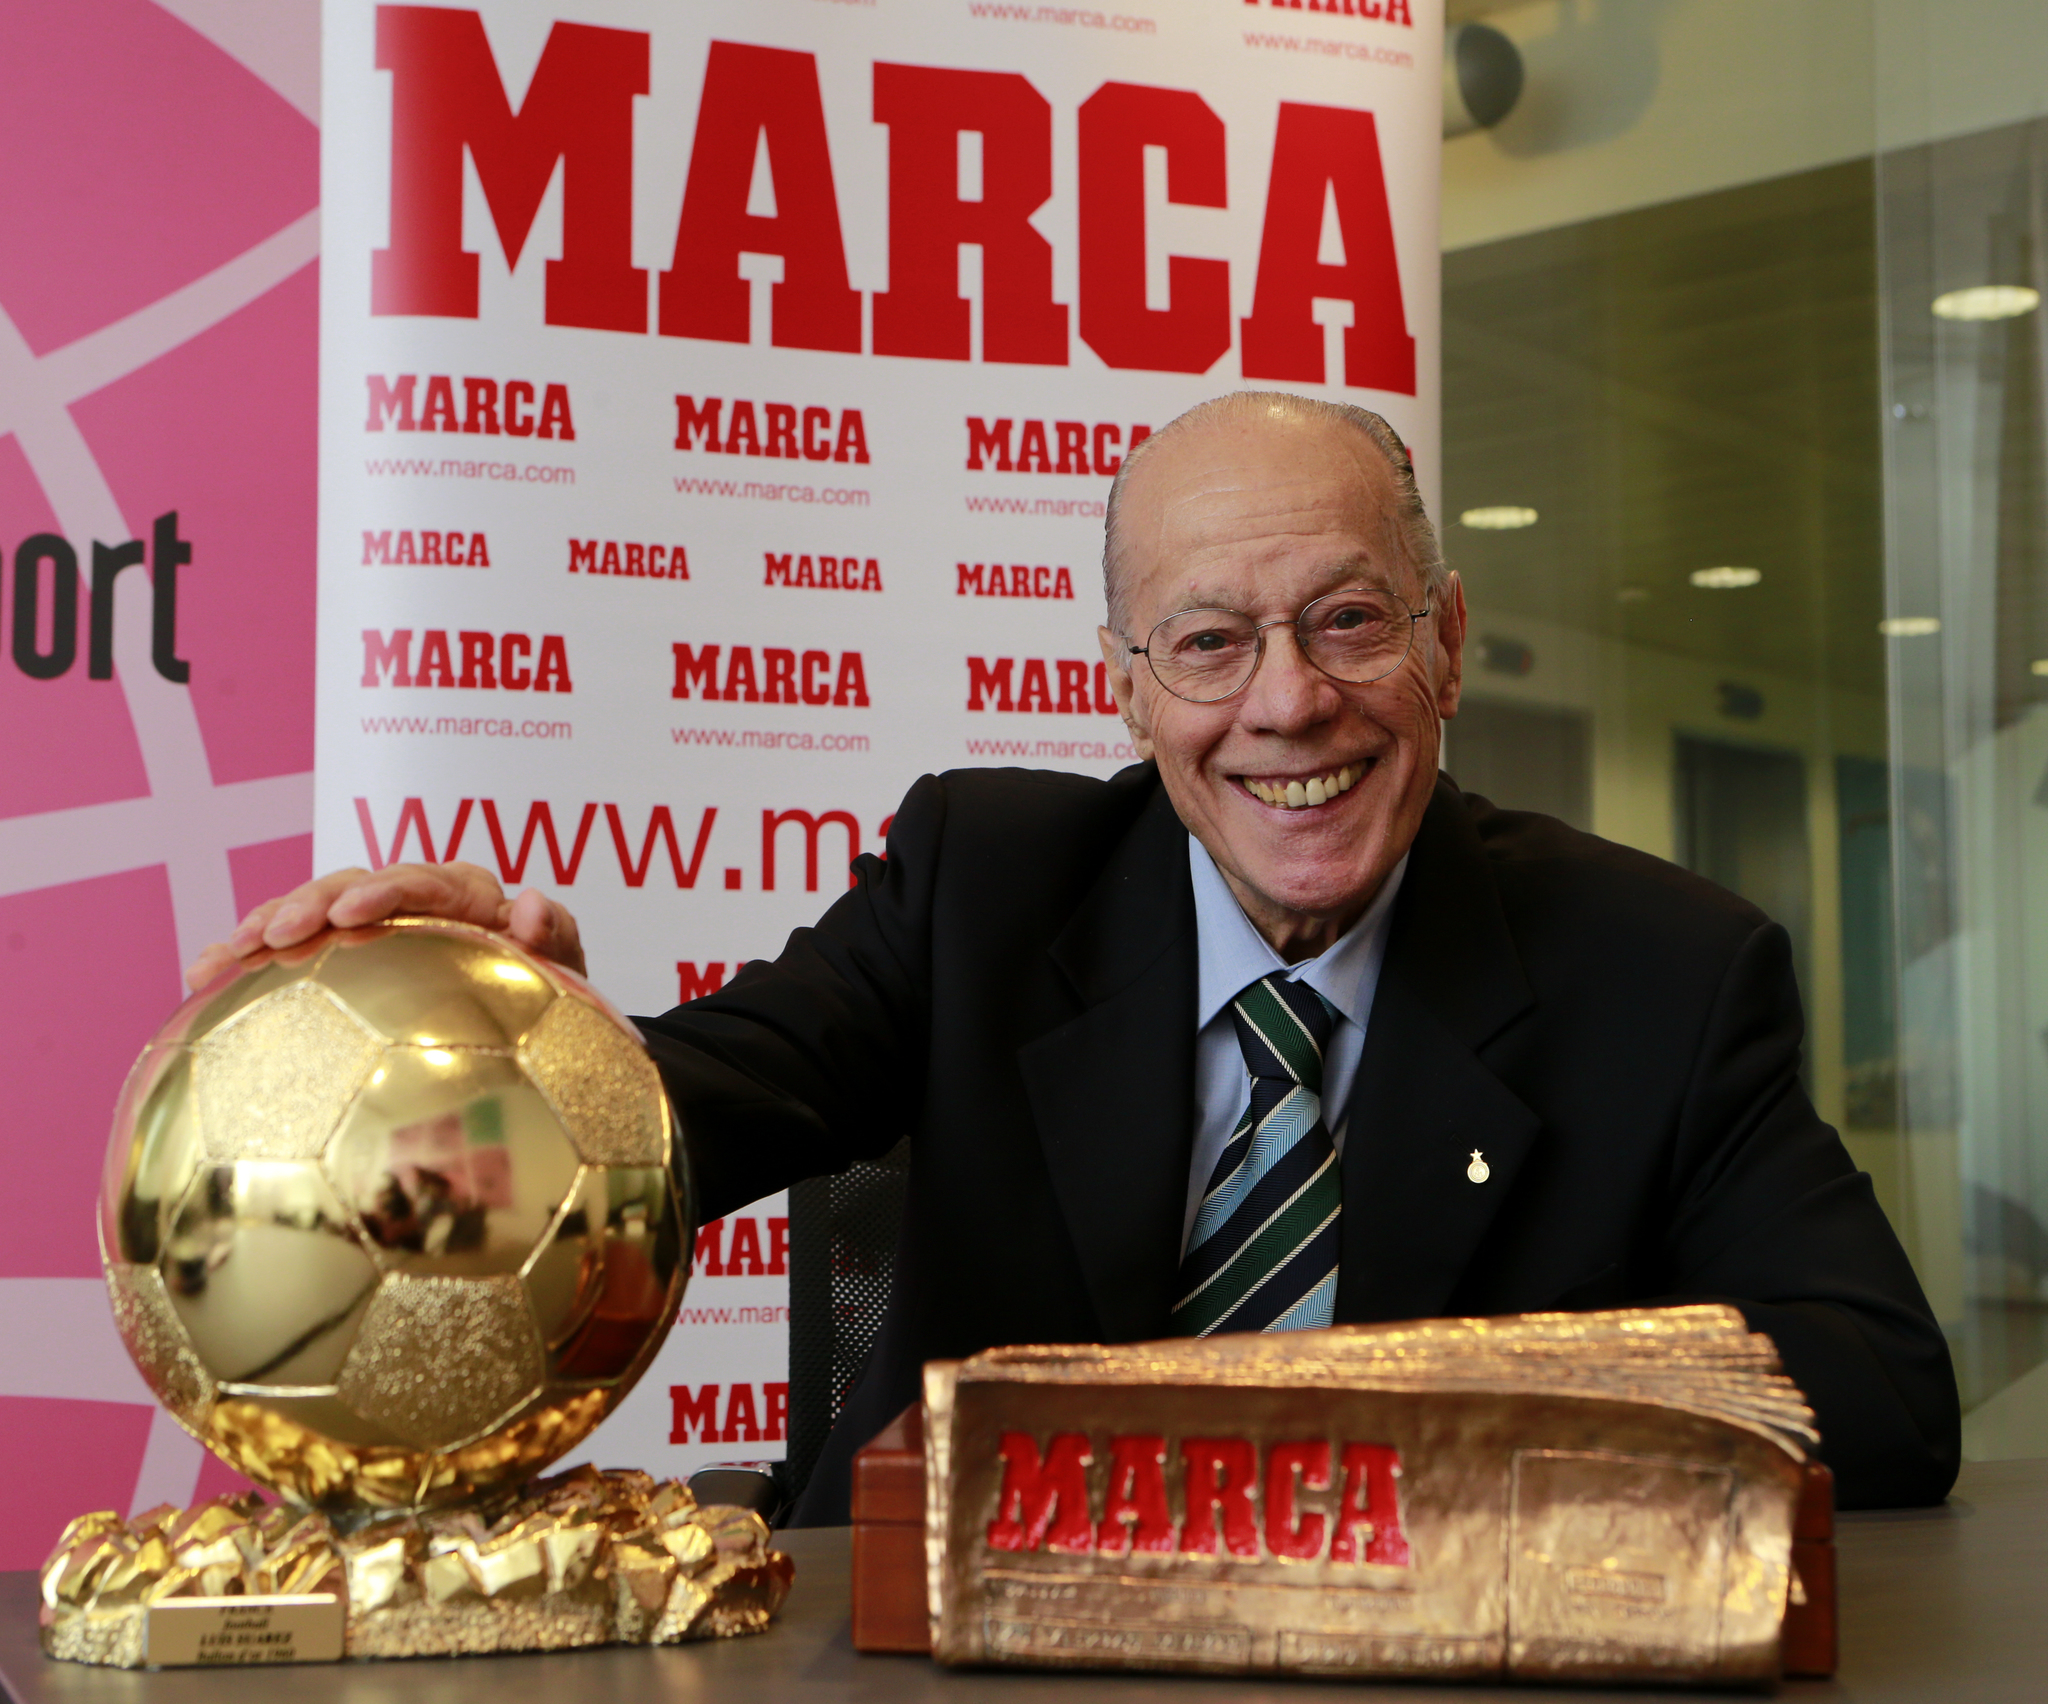 En 2016, el jugador español recibió el MARCA Leyenda. Aquí posa en la redacción del periódico junto al premio y al Balón de Oro.